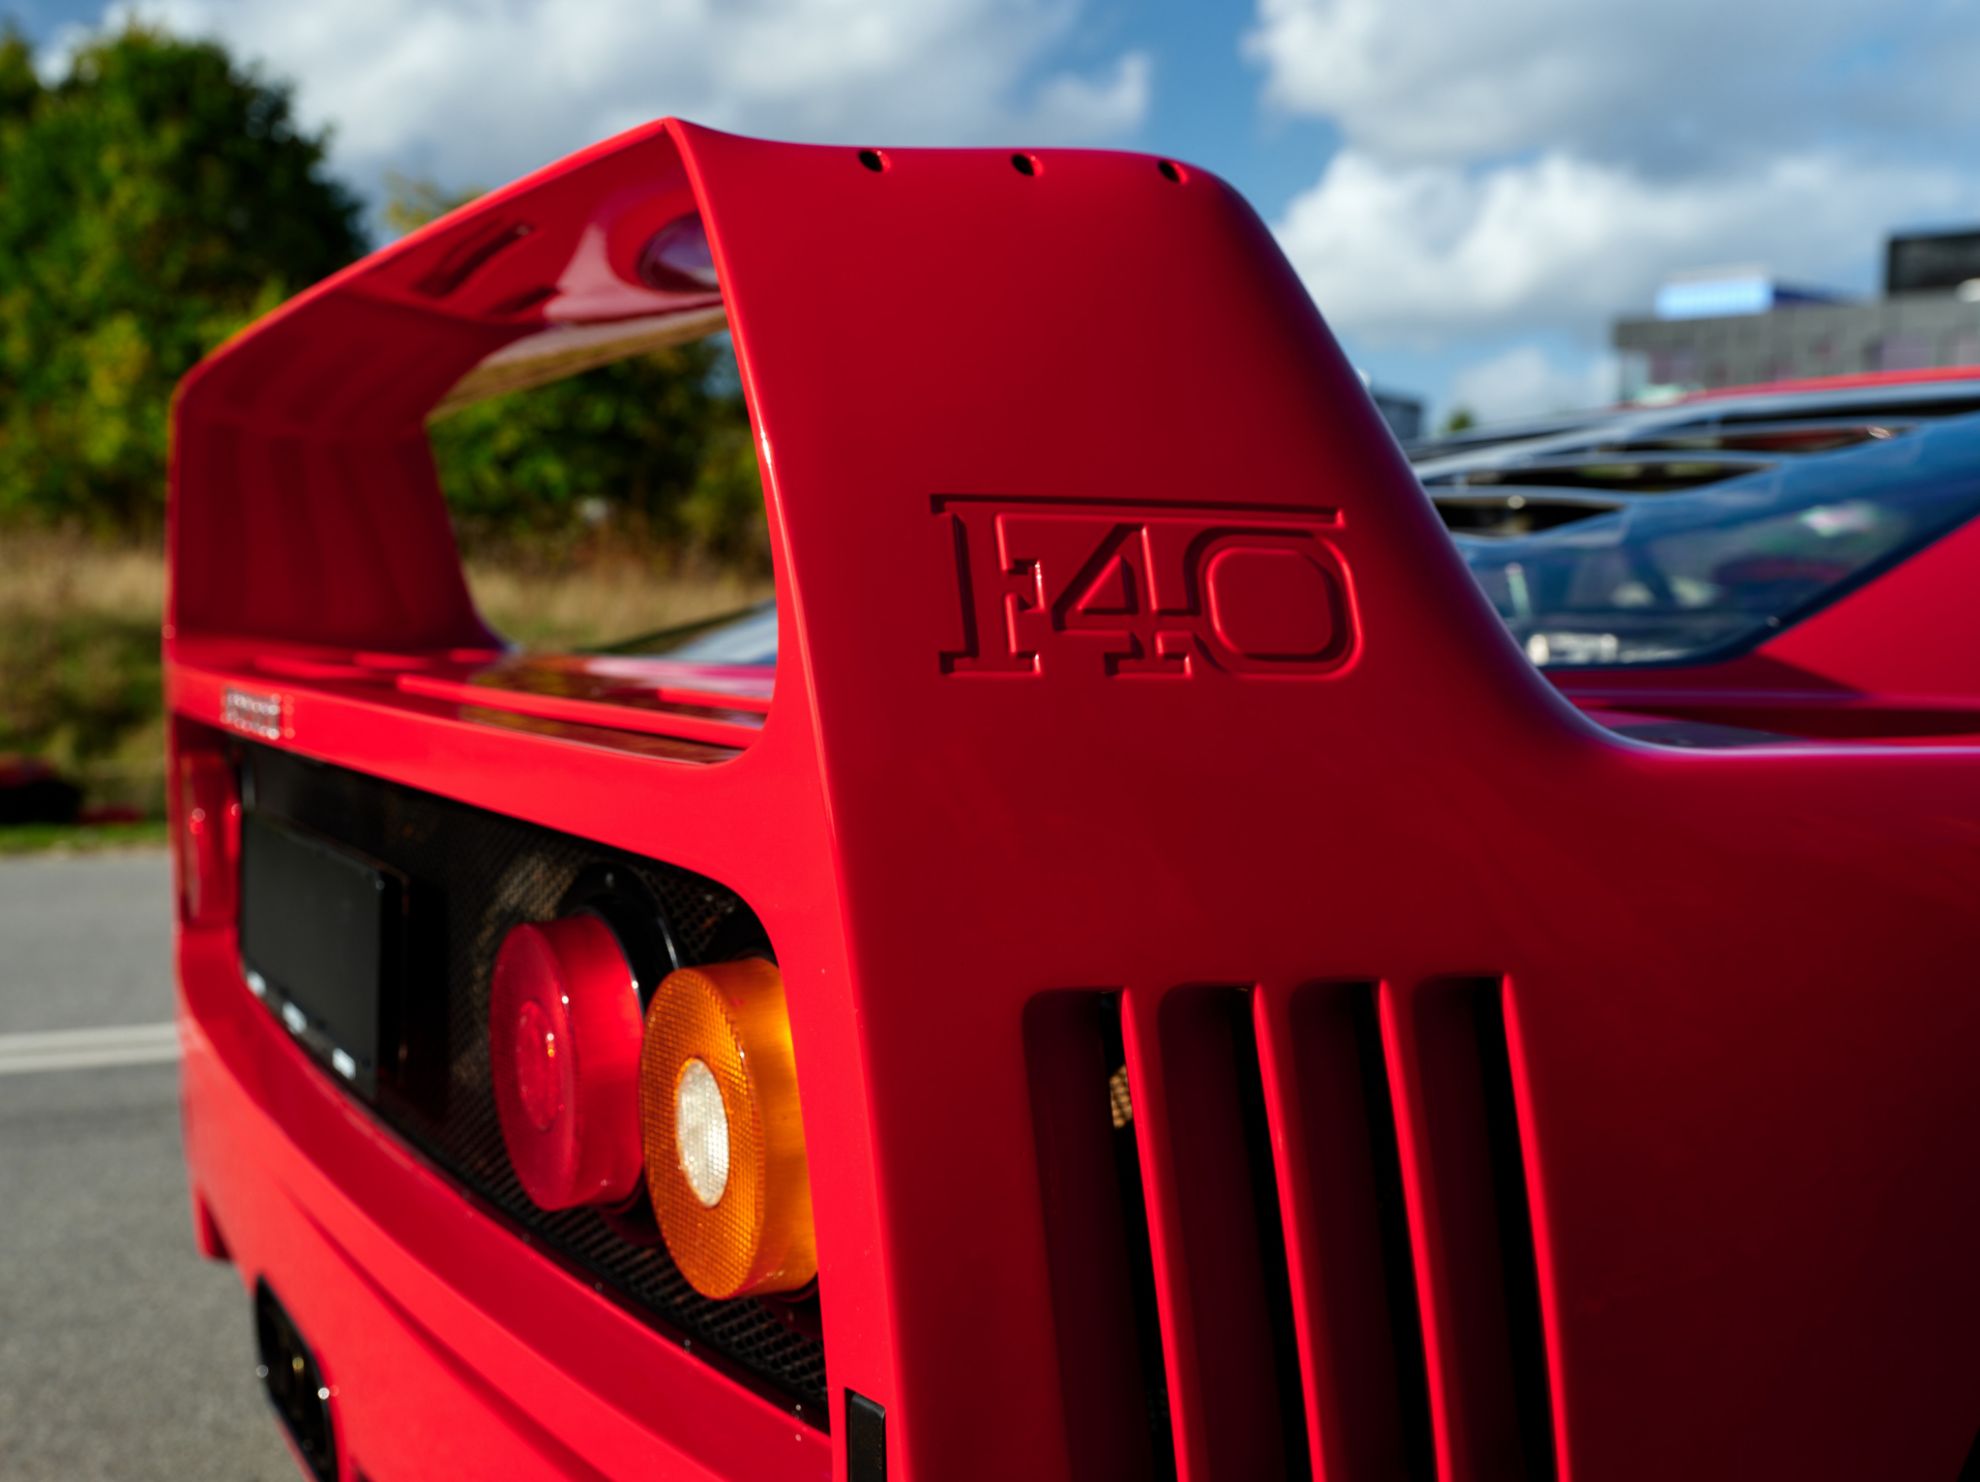 El Ferrari F40 es uno de los coches ms deseados del mundo... y Sotheby's tiene uno que impresiona.